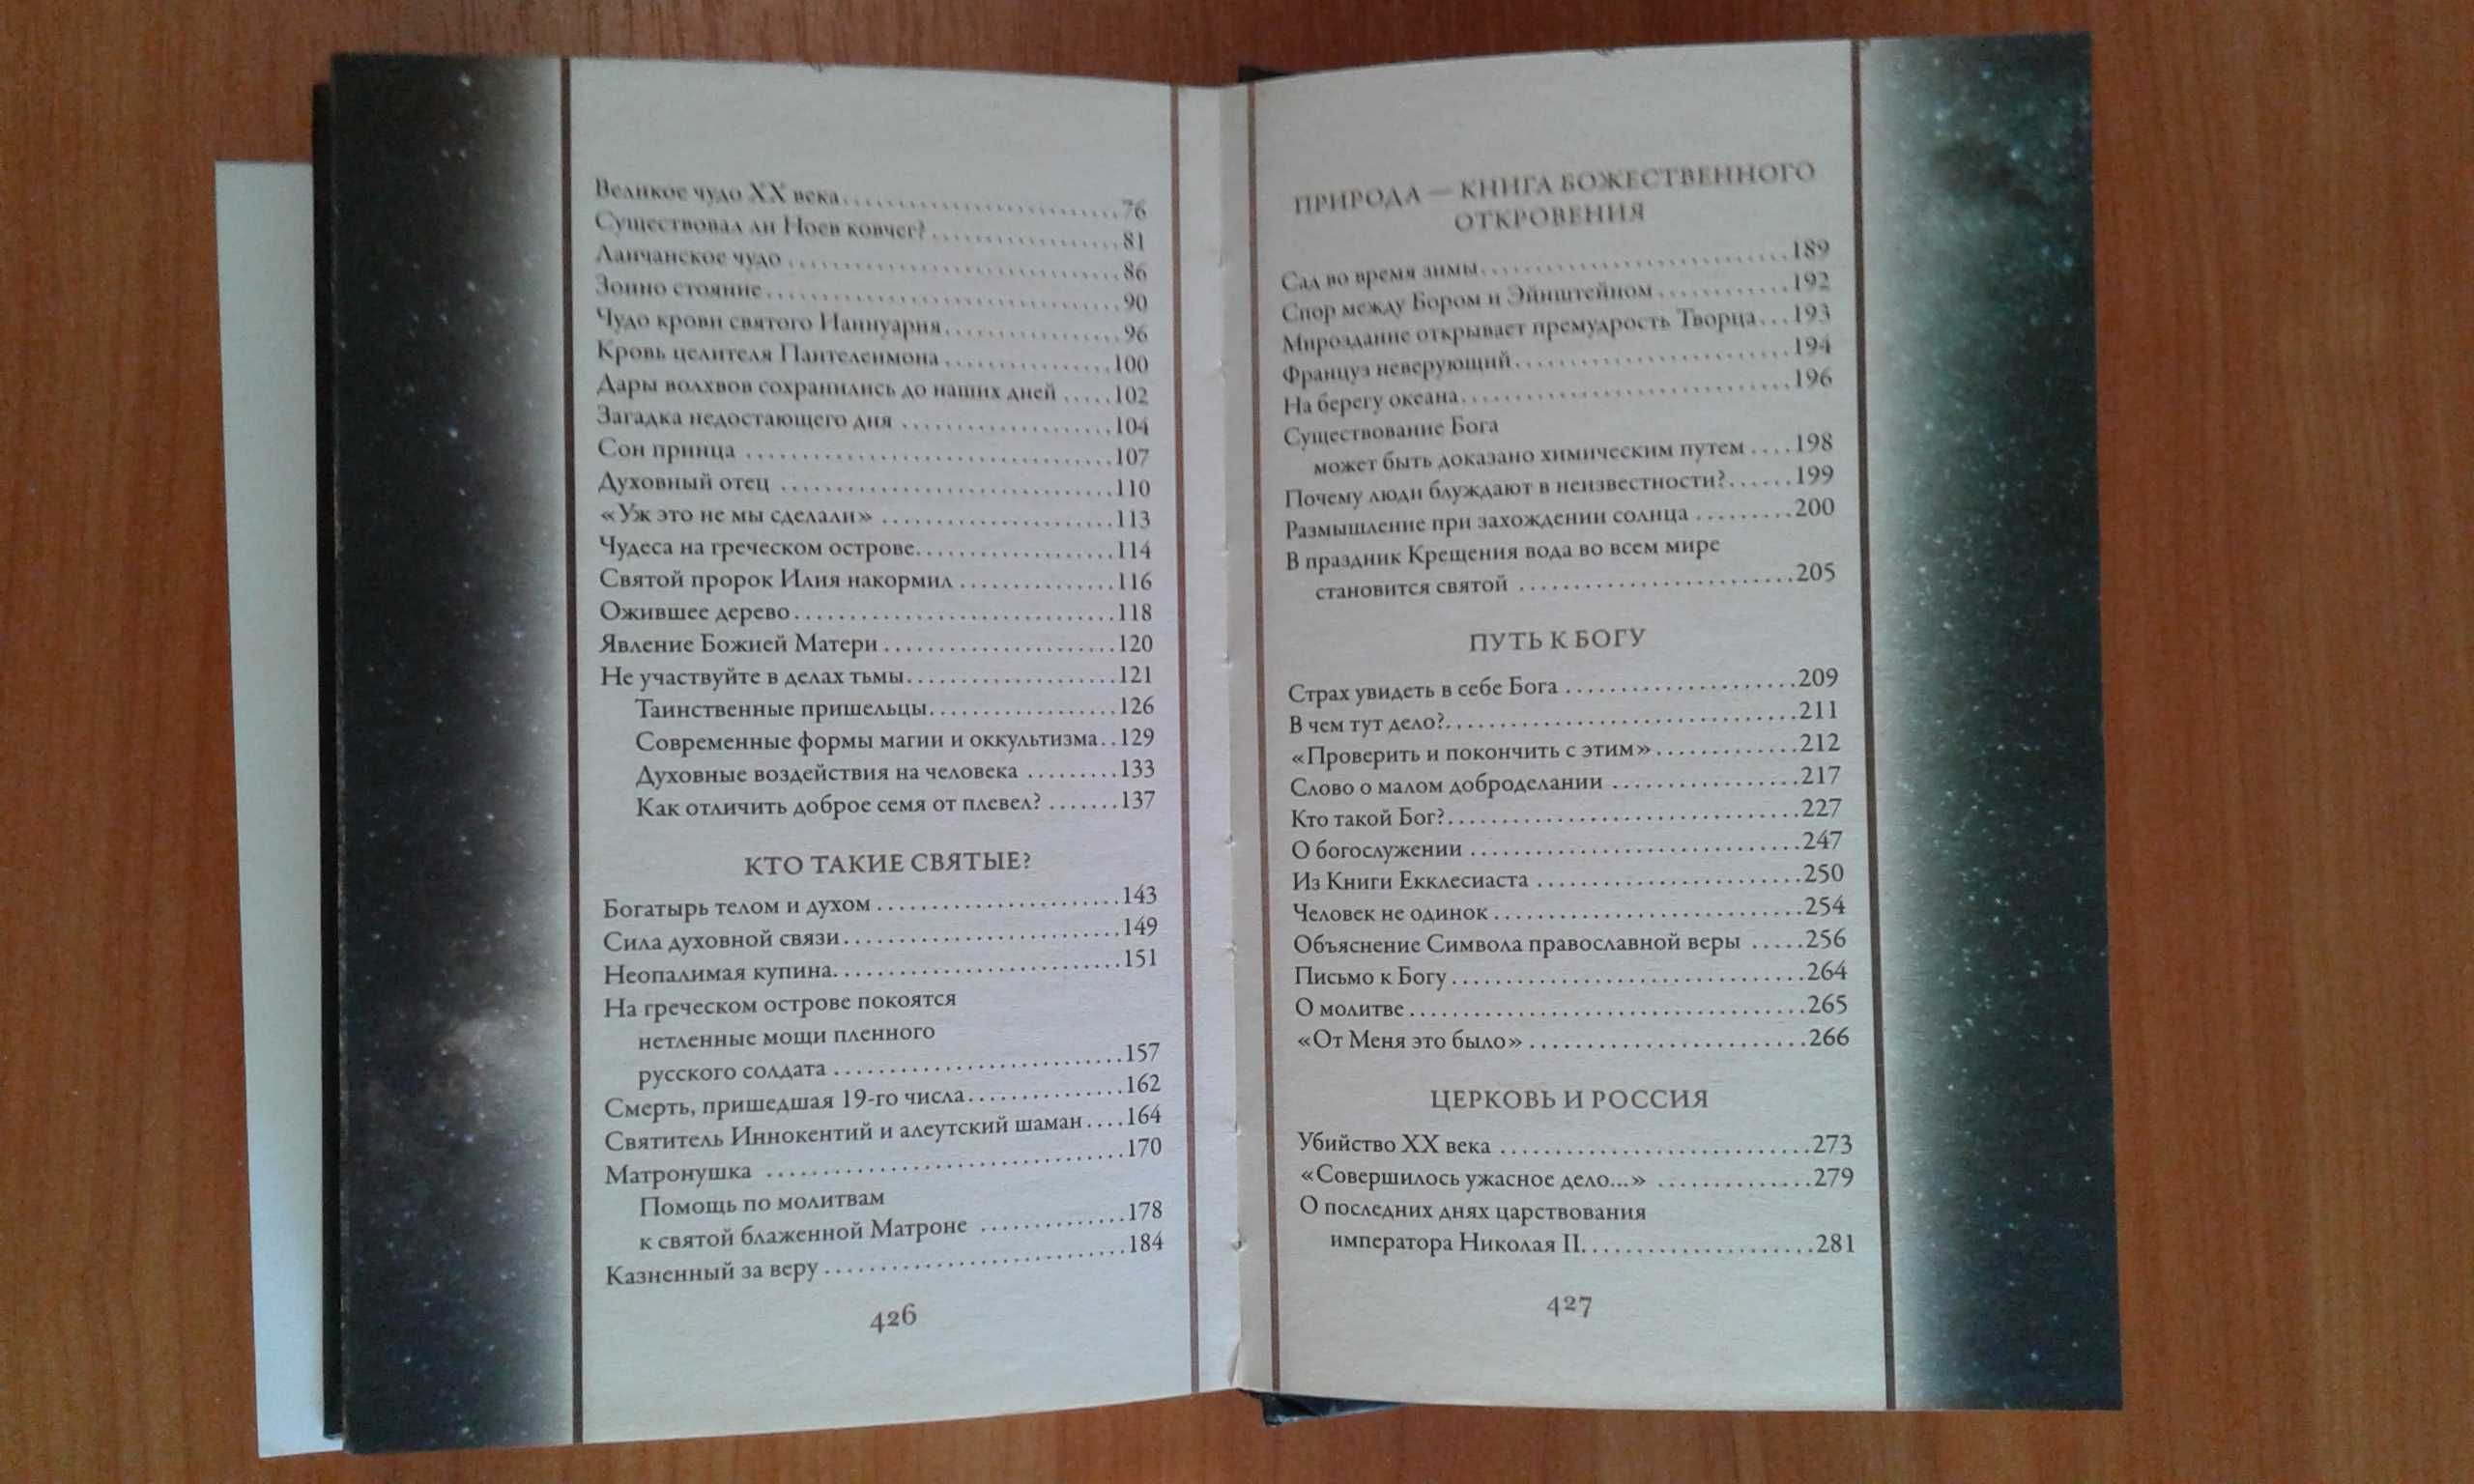 Книга "Непознный мир веры" 10-е издание Симферополь 2011г.